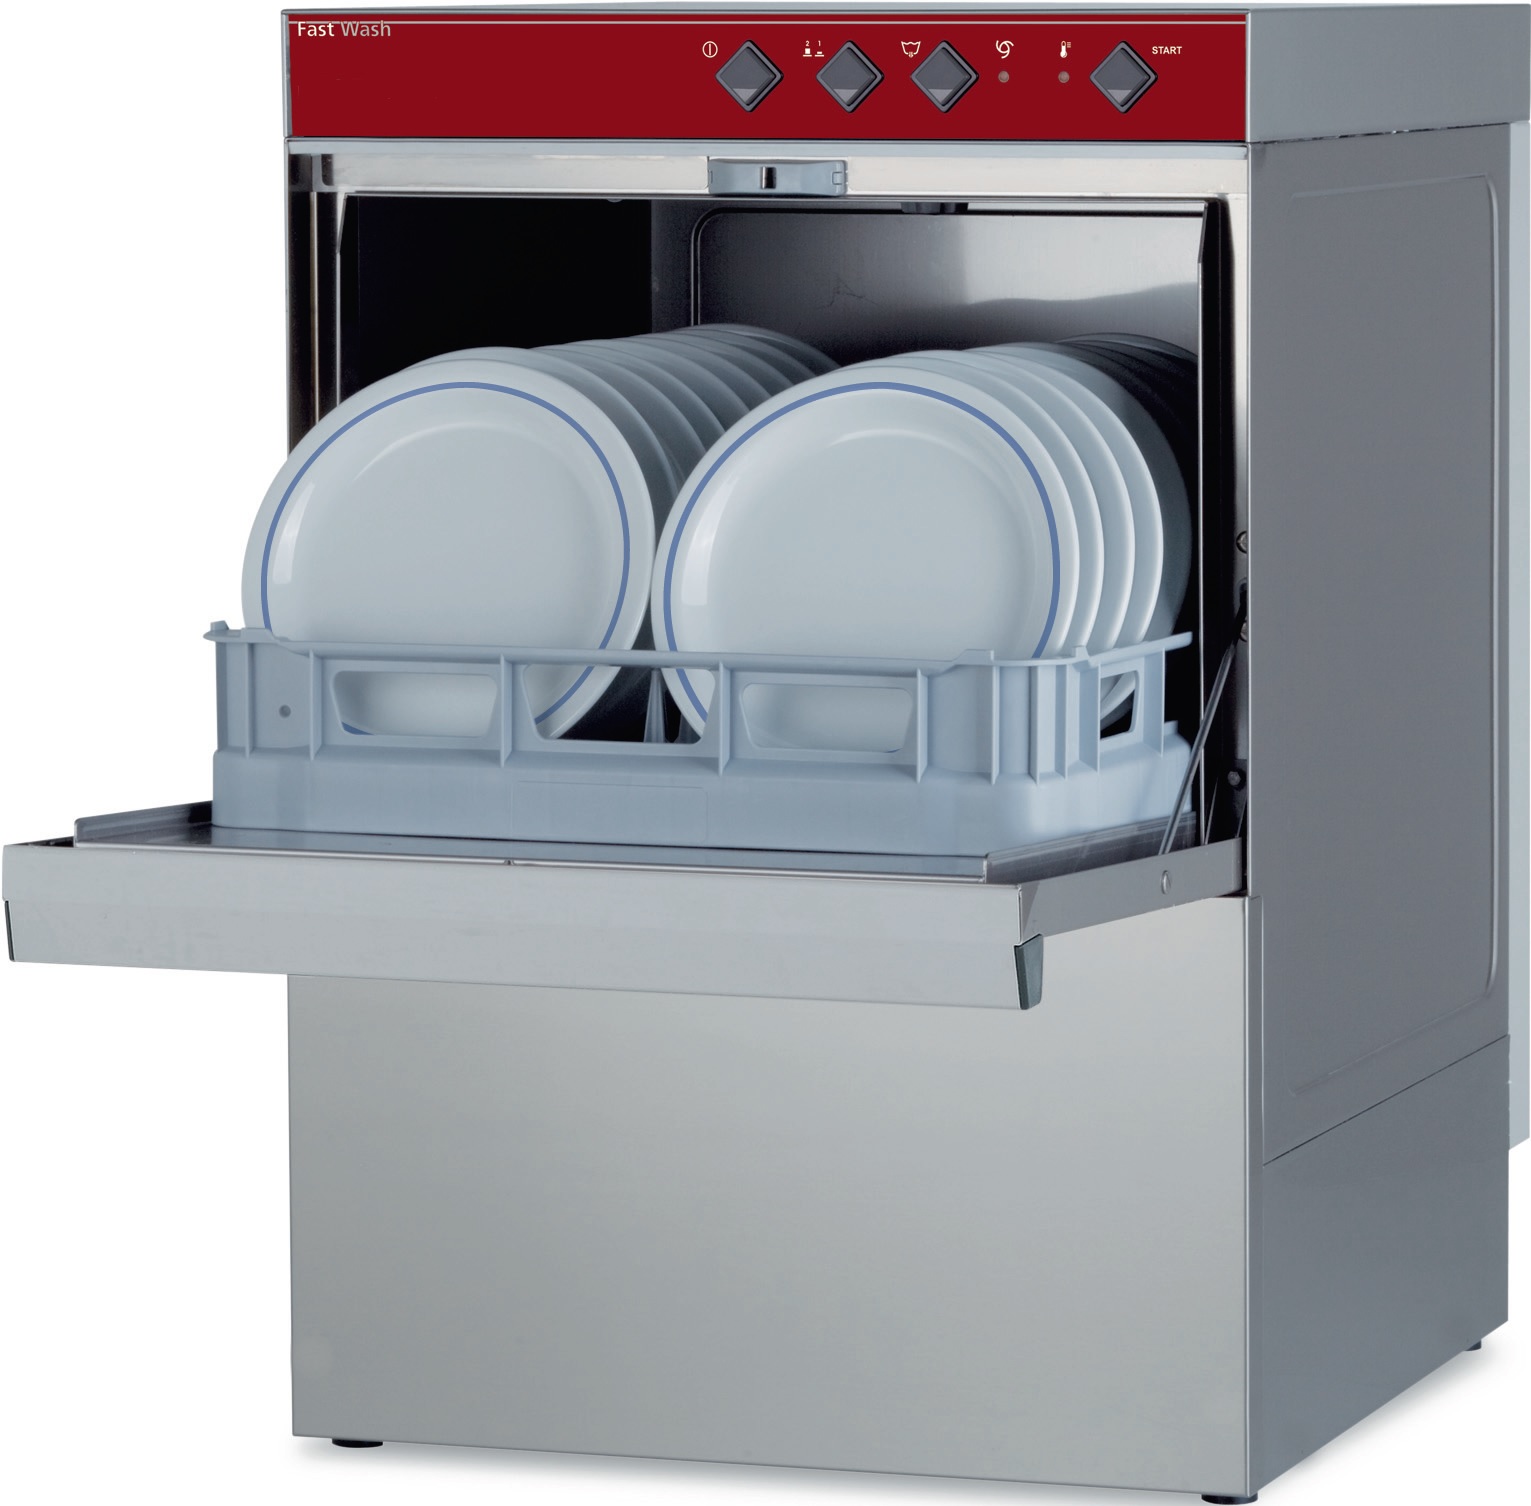 Окпд посудомоечная машина. Посудомоечная машина Diamond. Посудомоечная машина МПК-500ф. Посудомойка Абат МПК 500ф. МПТ-1700 посудомоечная машина.